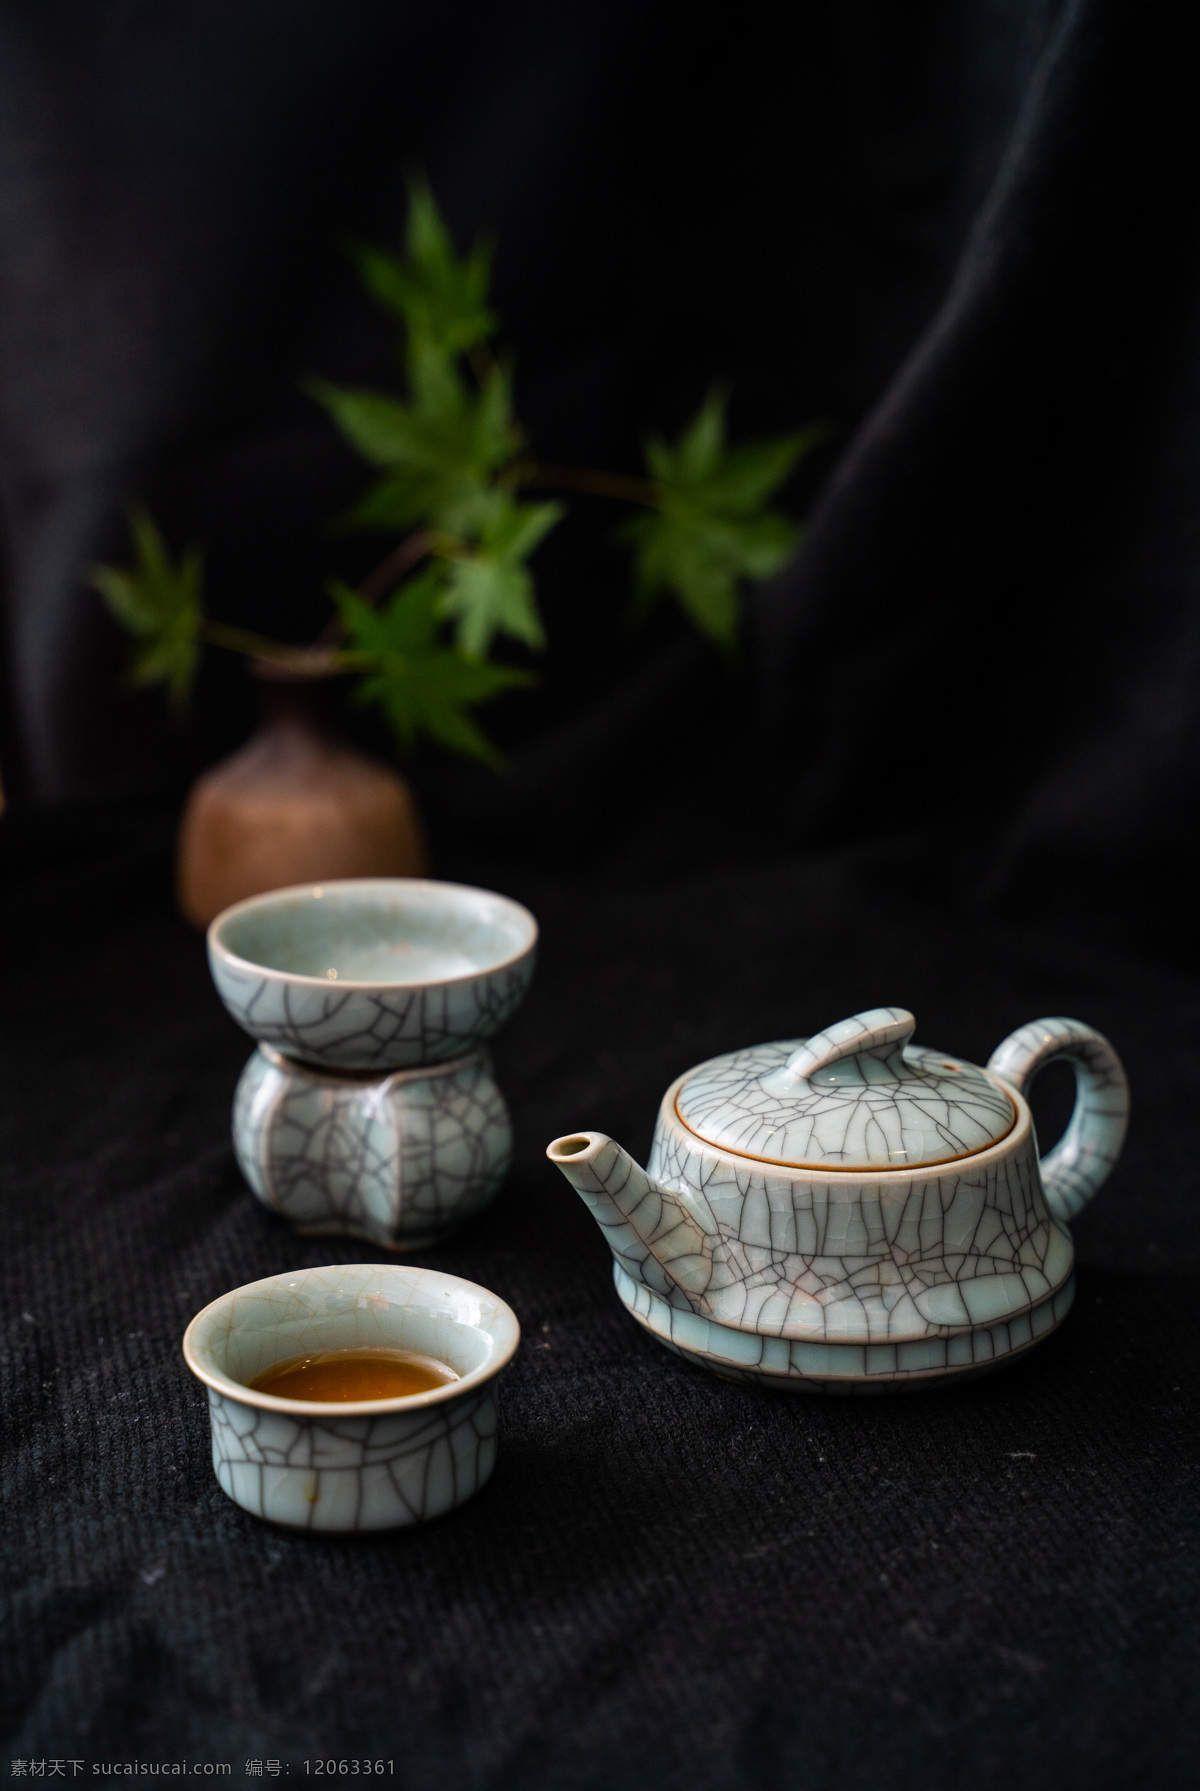 茶具 茶杯 瓷器 复古 背景 海报 素材图片 杂图